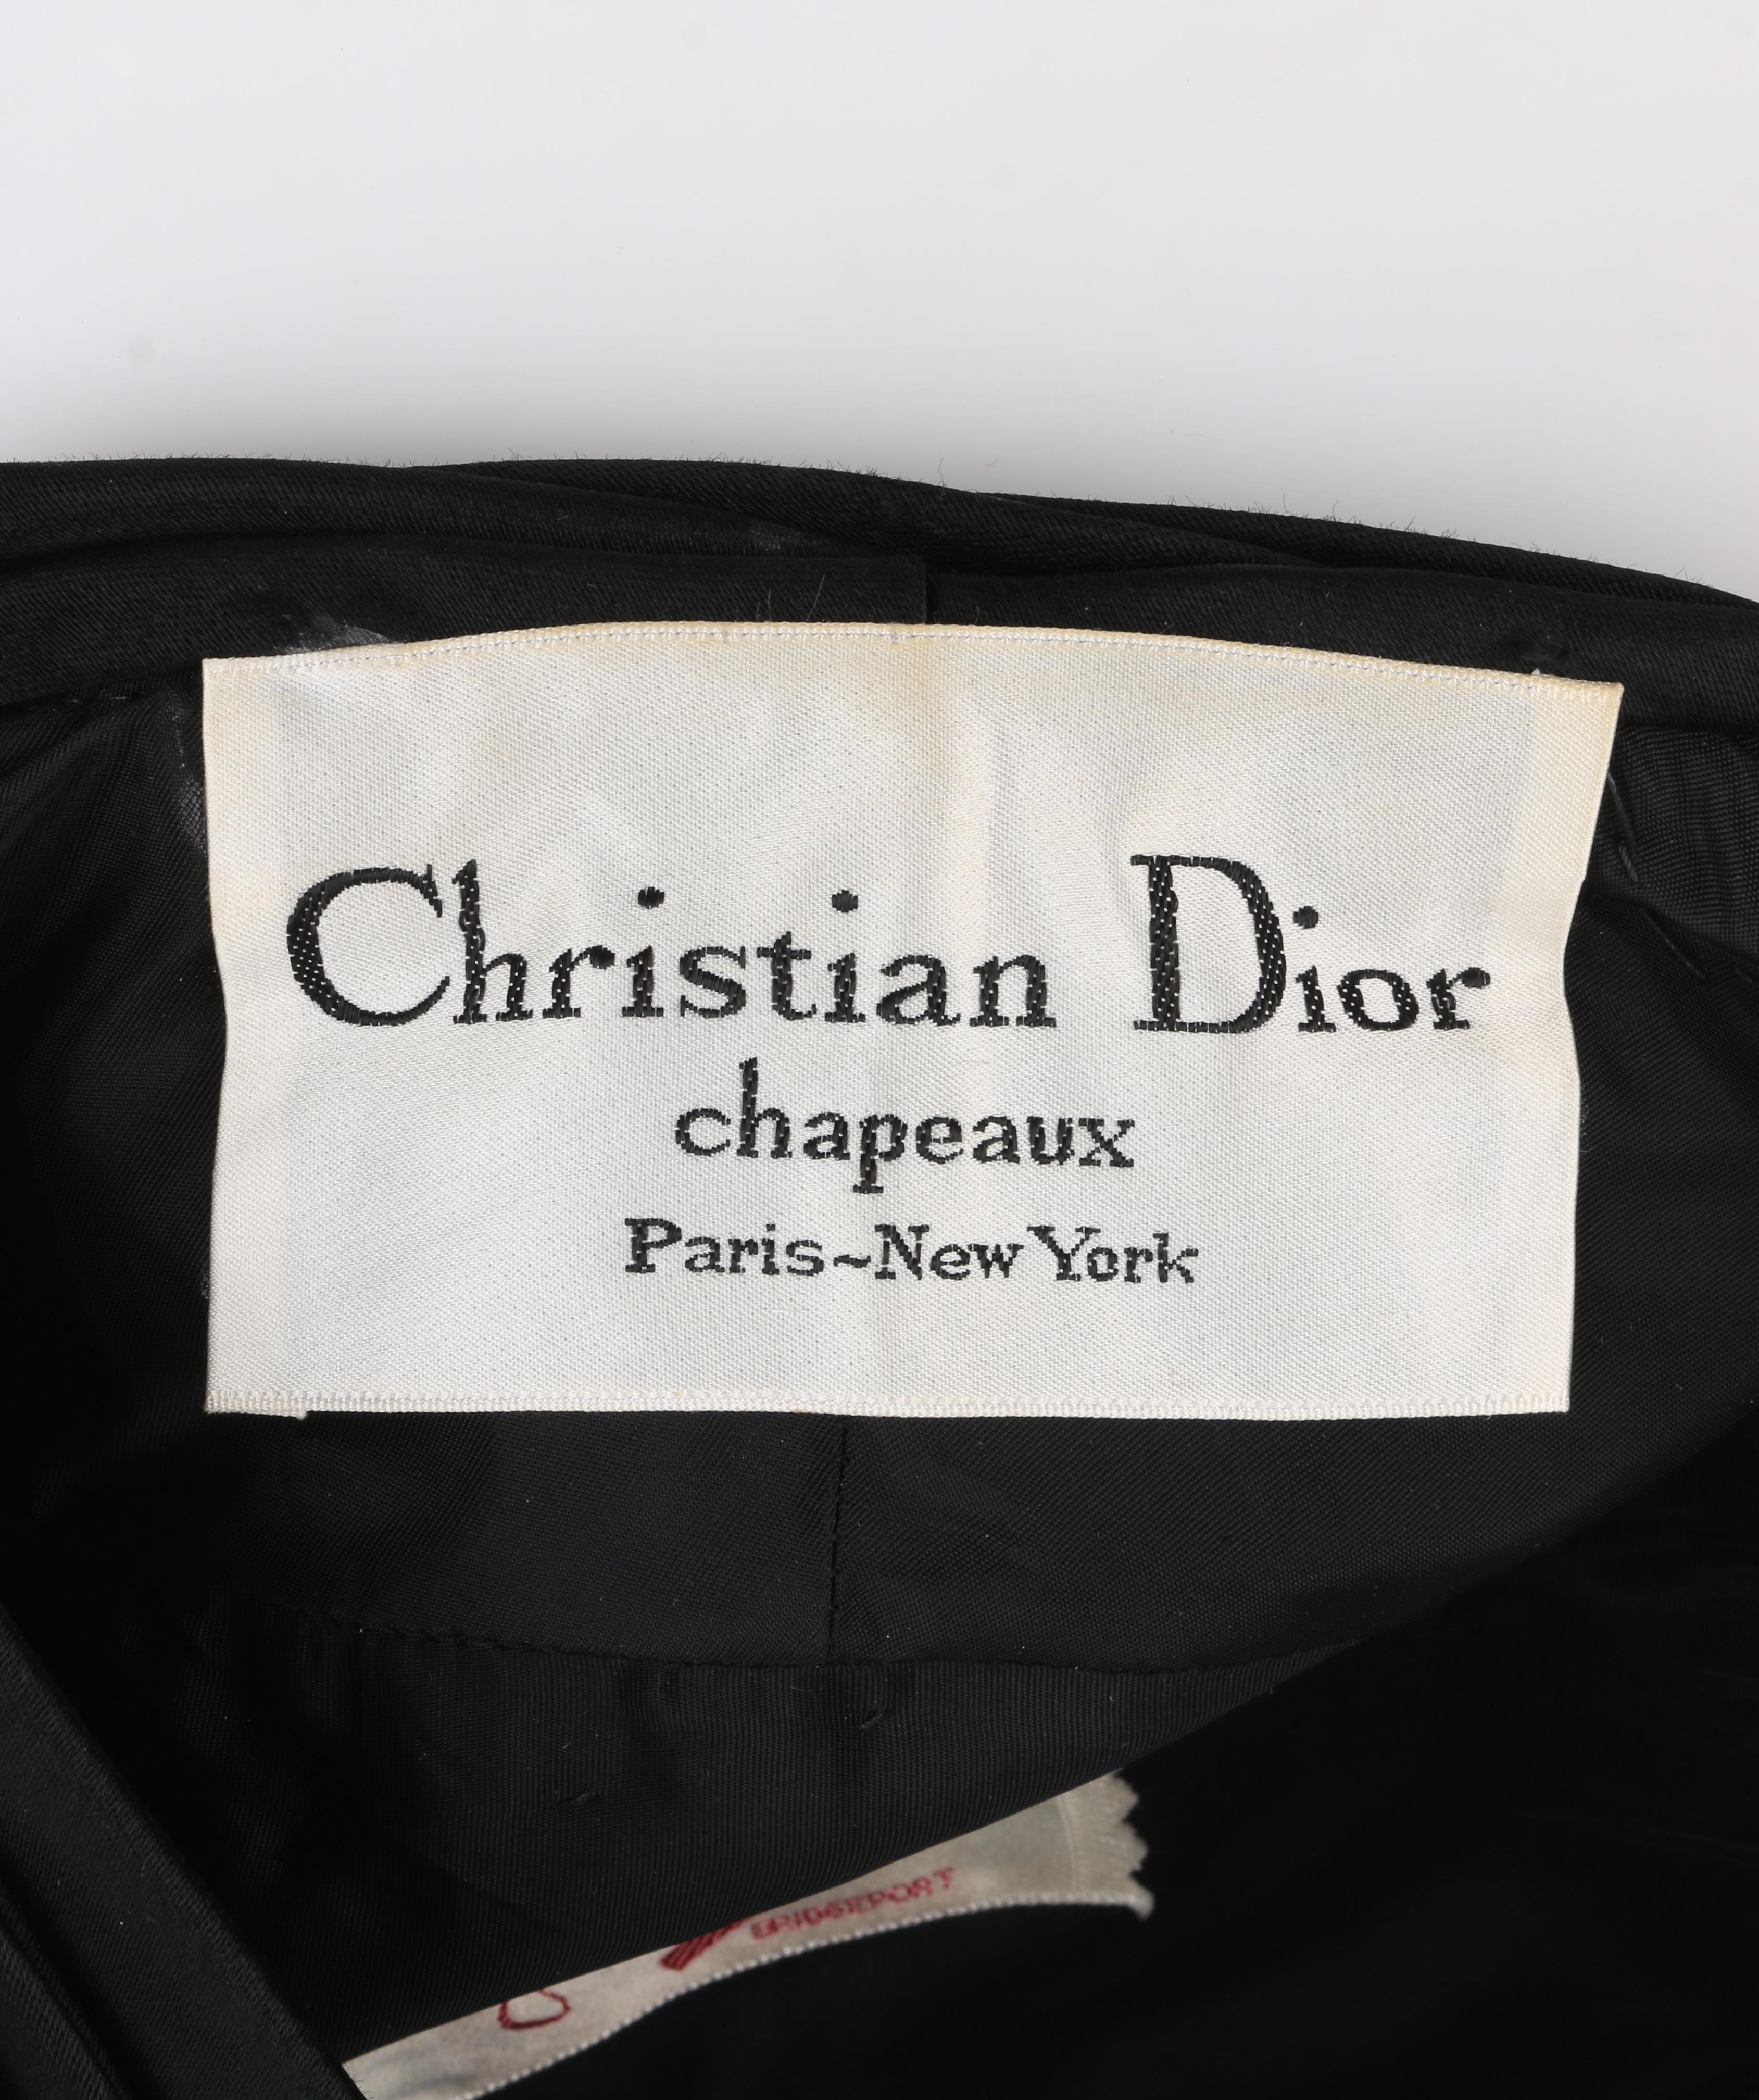 CHRISTIAN DIOR Chapeaux c.1960’s Black Silk Satin Pleated Pillbox Turban Hat 5